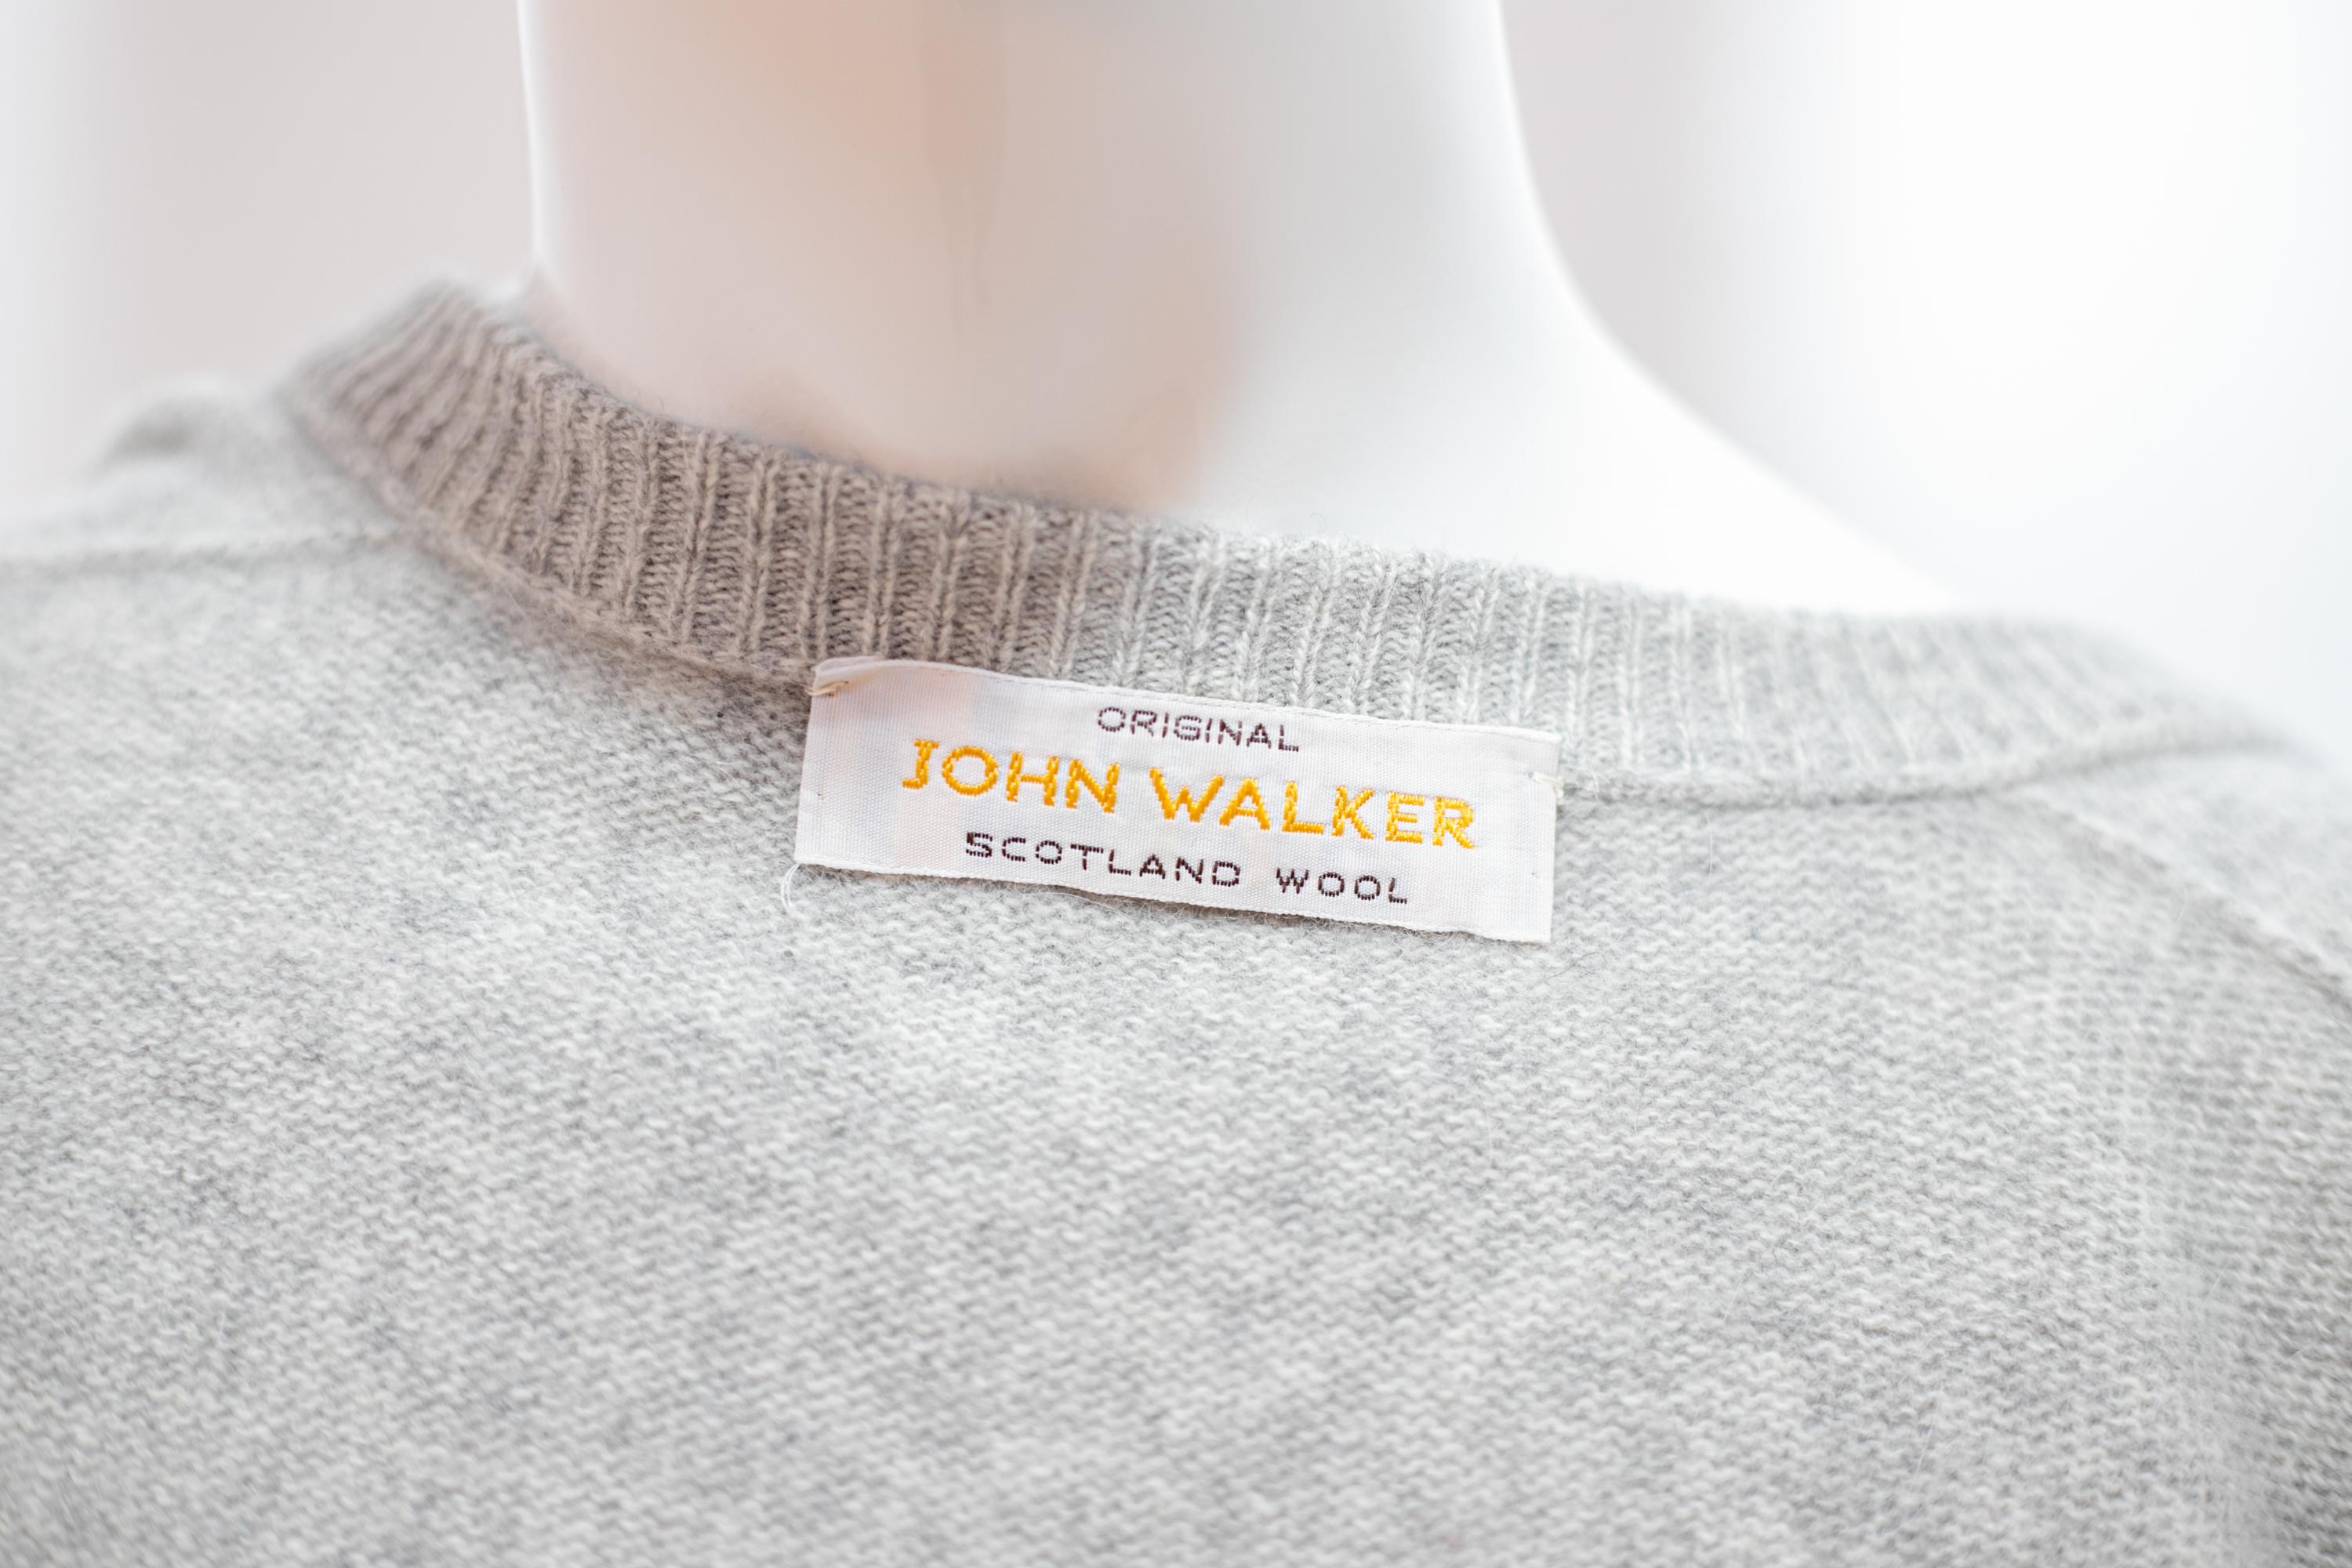 Schöner Wollpullover, entworfen von John Walker in den 1990er Jahren, hergestellt in Schottland.
Der Pullover ist ganz aus grauer schottischer Wolle gefertigt, mit langen Ärmeln und schmalen Bündchen.
Der Pullover hat einen klassischen U-förmigen